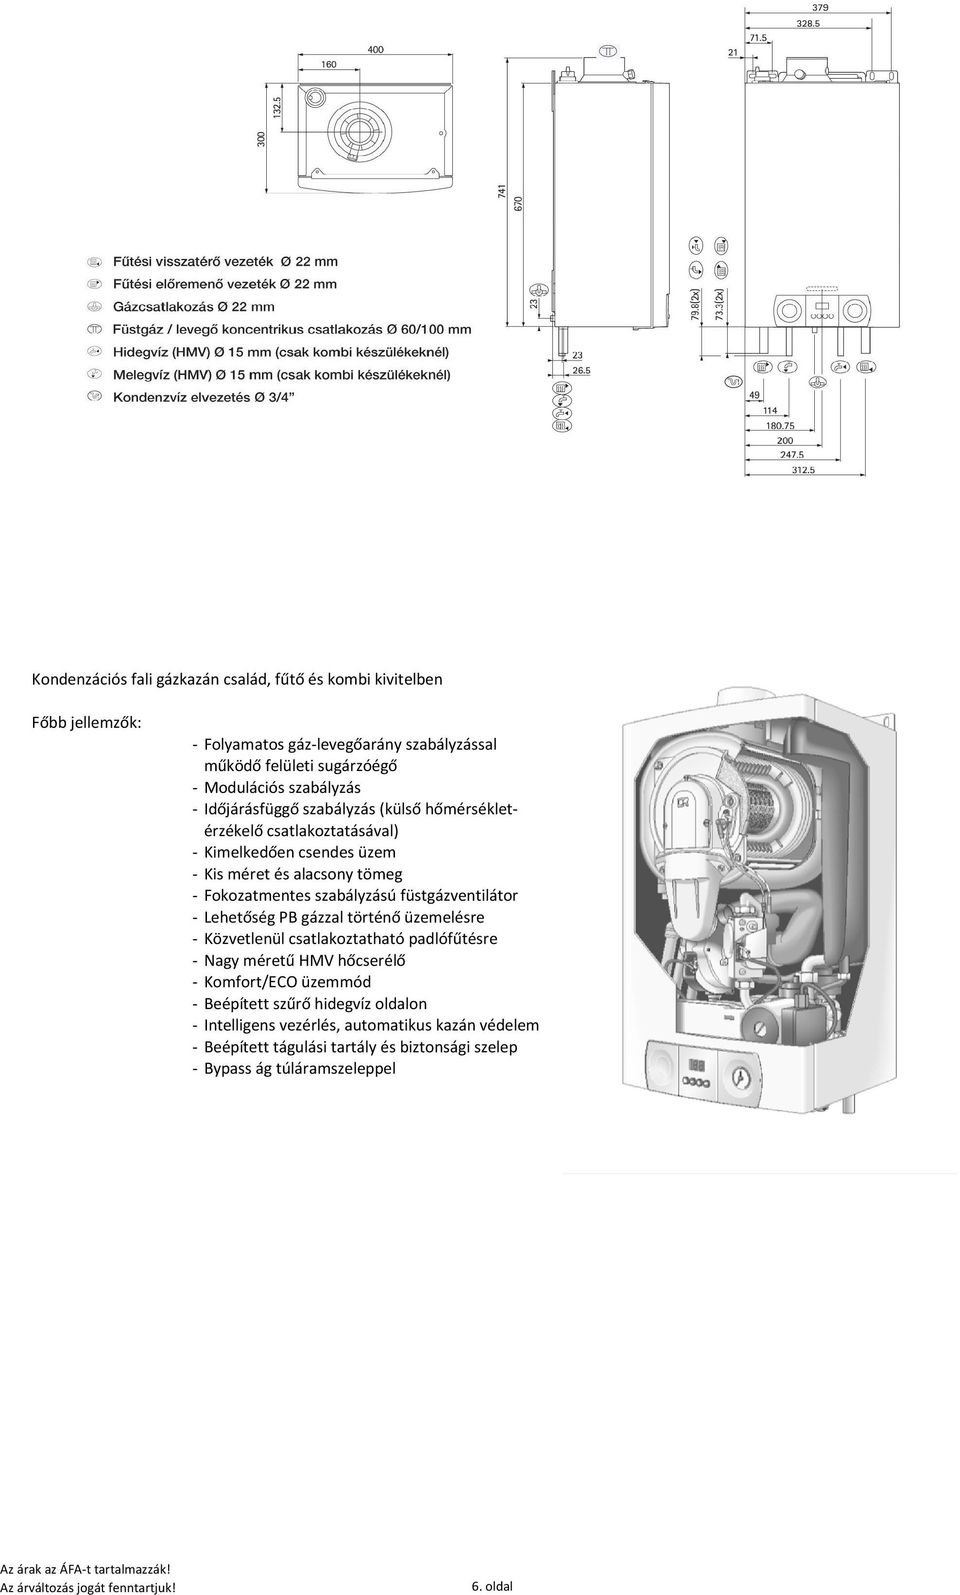 füstgázventilátor - Lehetőség PB gázzal történő üzemelésre - Közvetlenül csatlakoztatható padlófűtésre - Nagy méretű HMV hőcserélő - Komfort/ECO üzemmód - Beépített szűrő